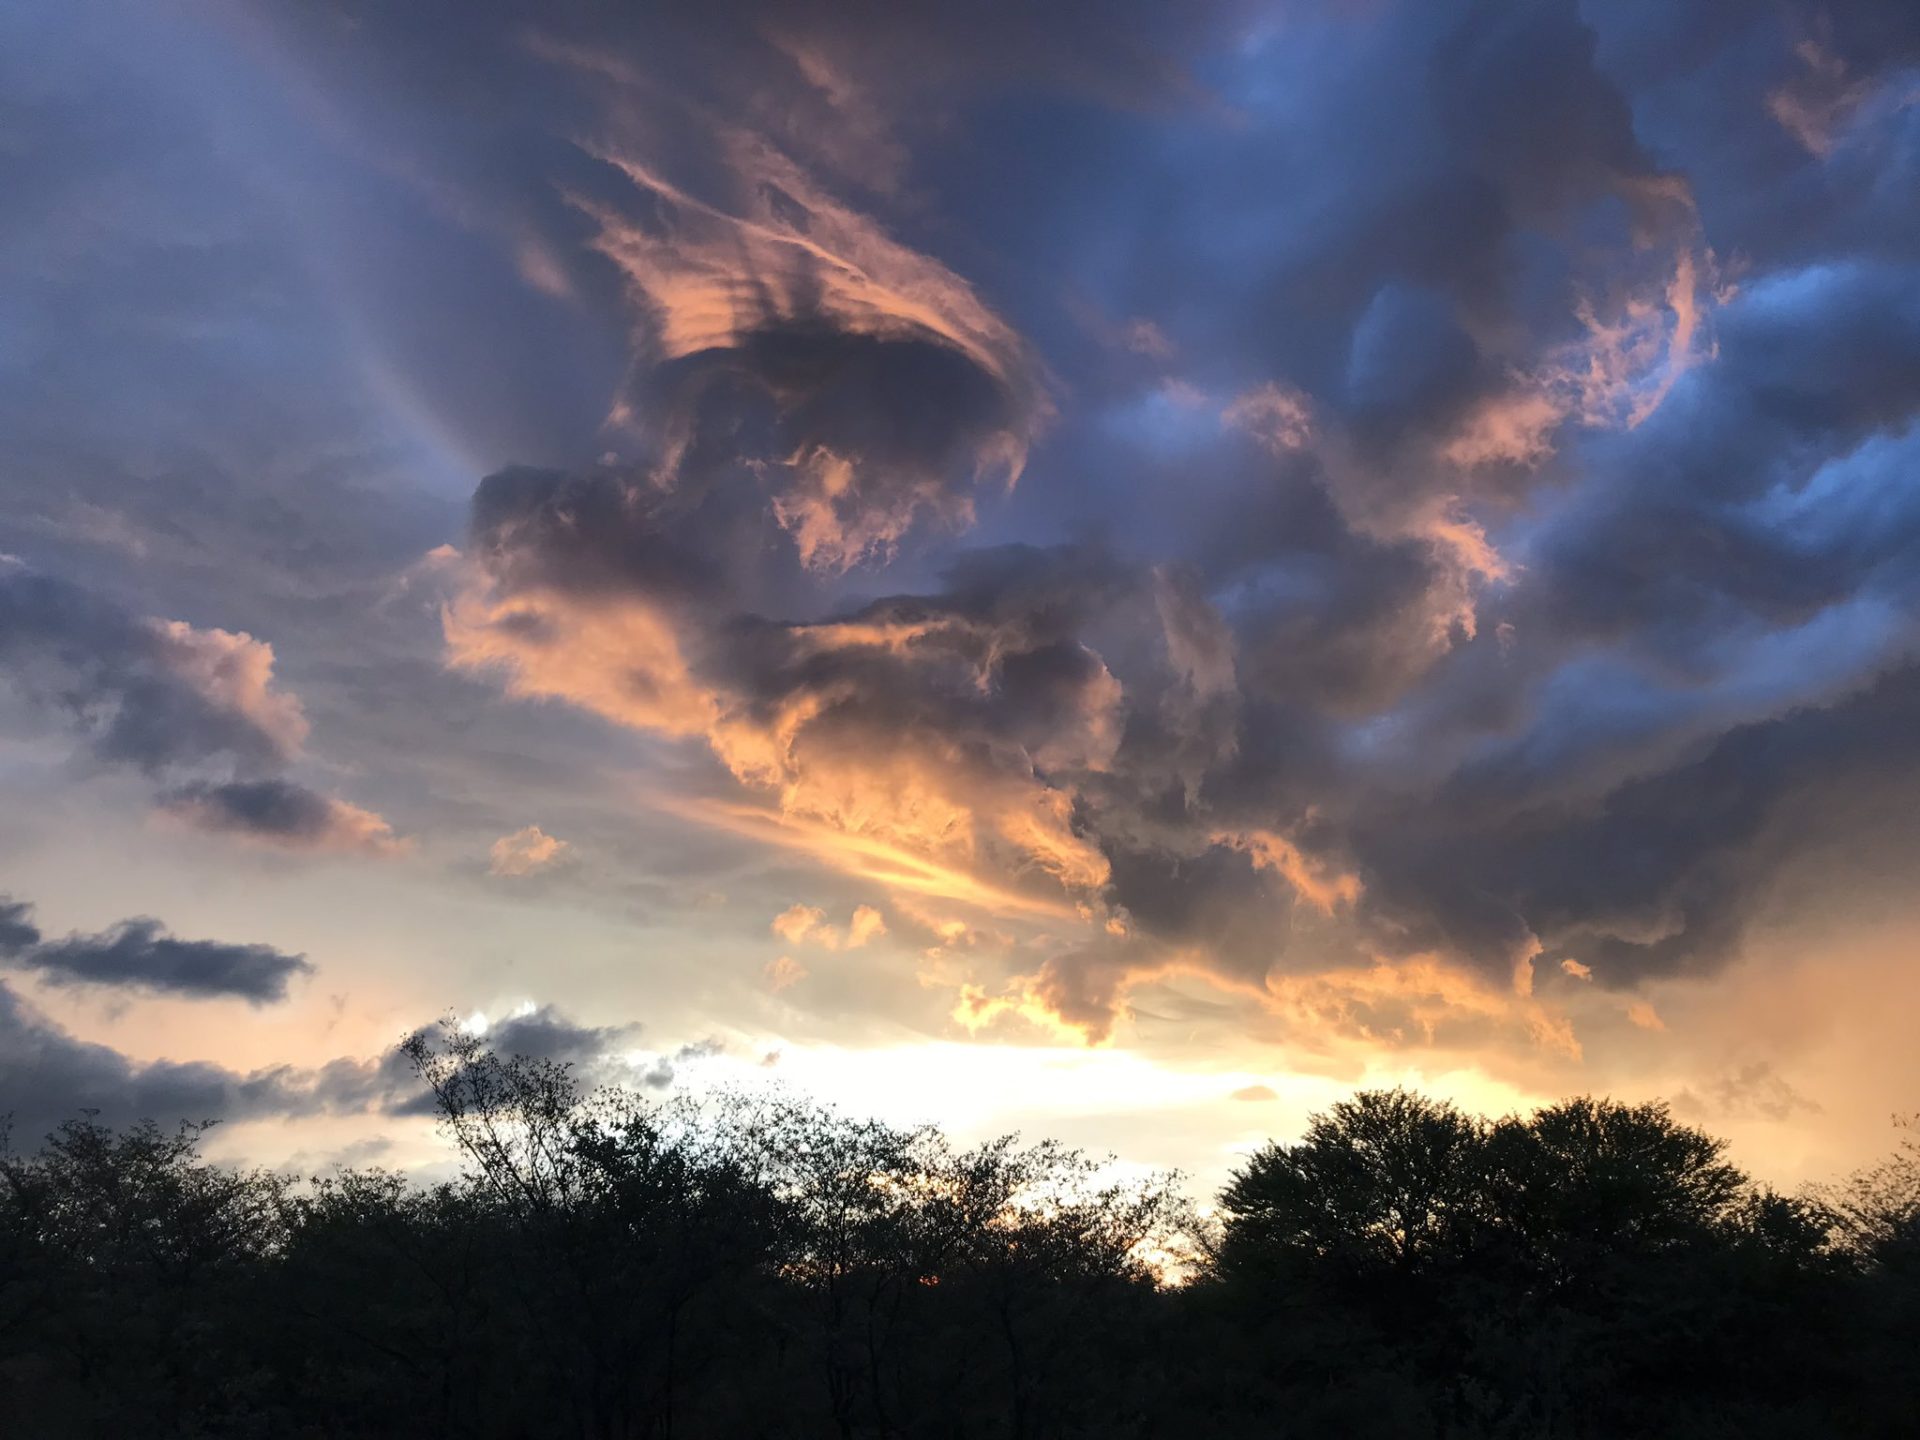 Clouds over the Kalahari